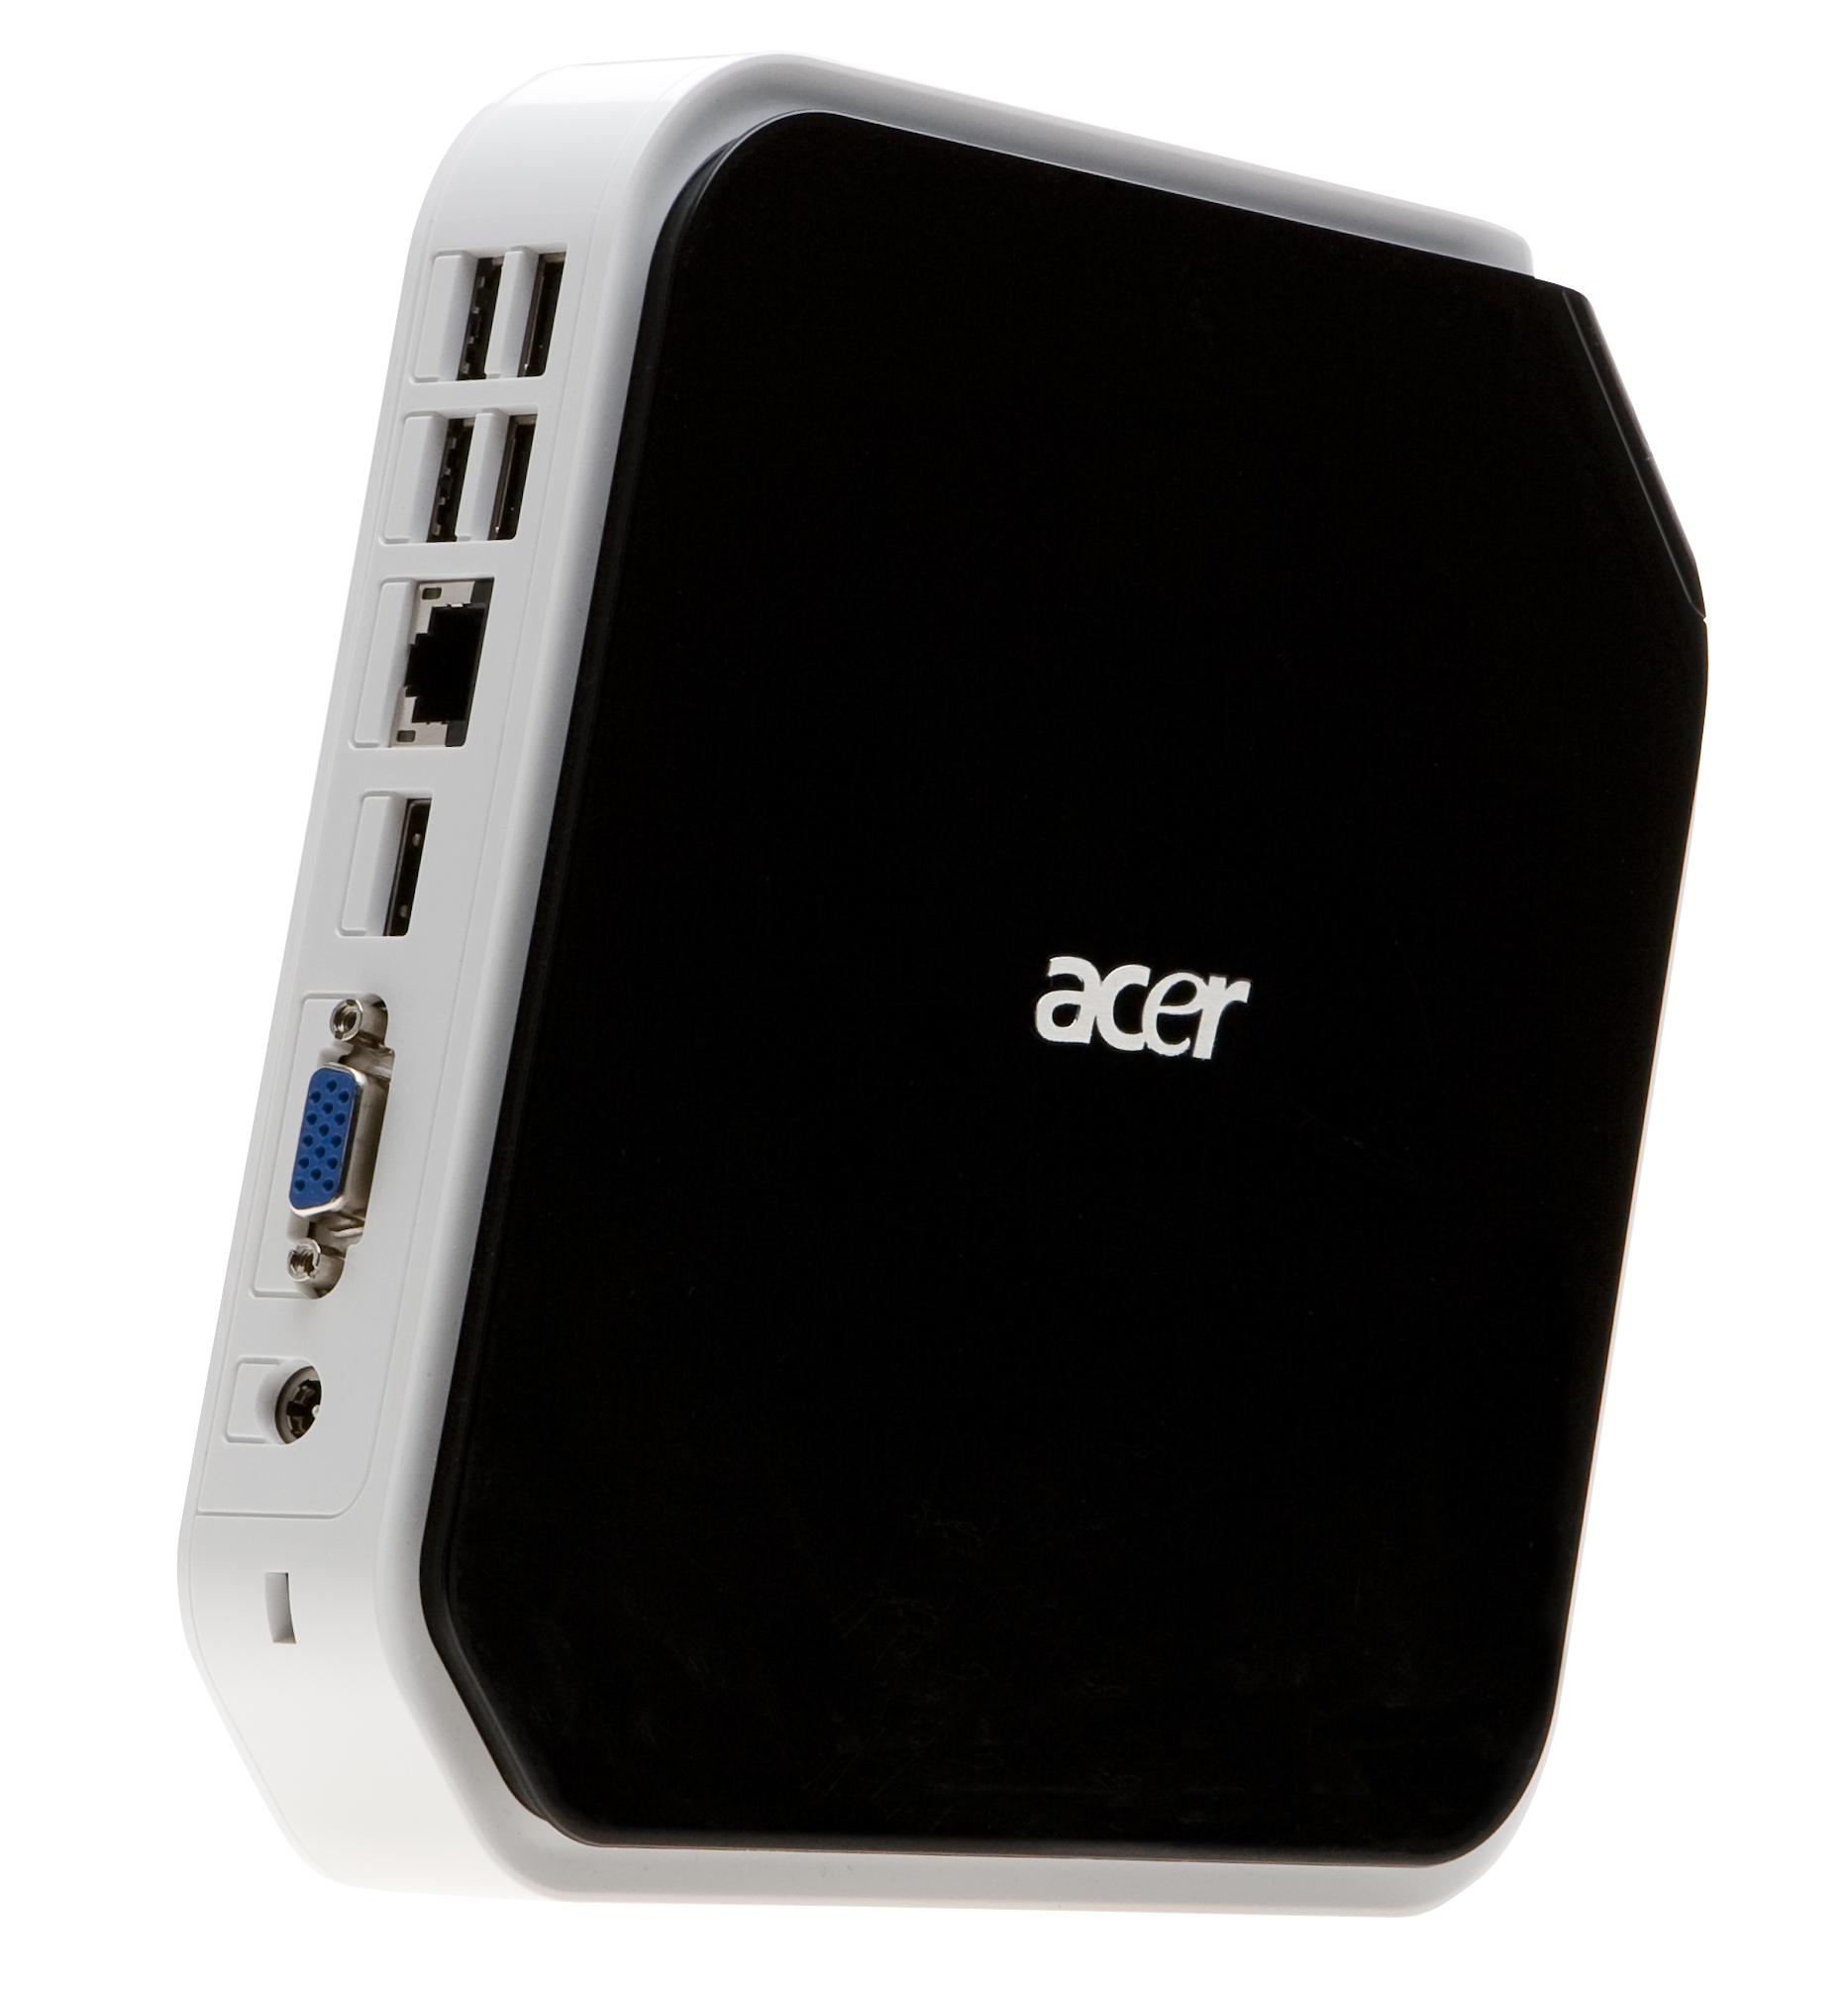 Immagine pubblicata in relazione al seguente contenuto: Acer AspireRevo, il primo PC basato sulla piattaforma NVIDIA Ion | Nome immagine: news10073_1.jpg